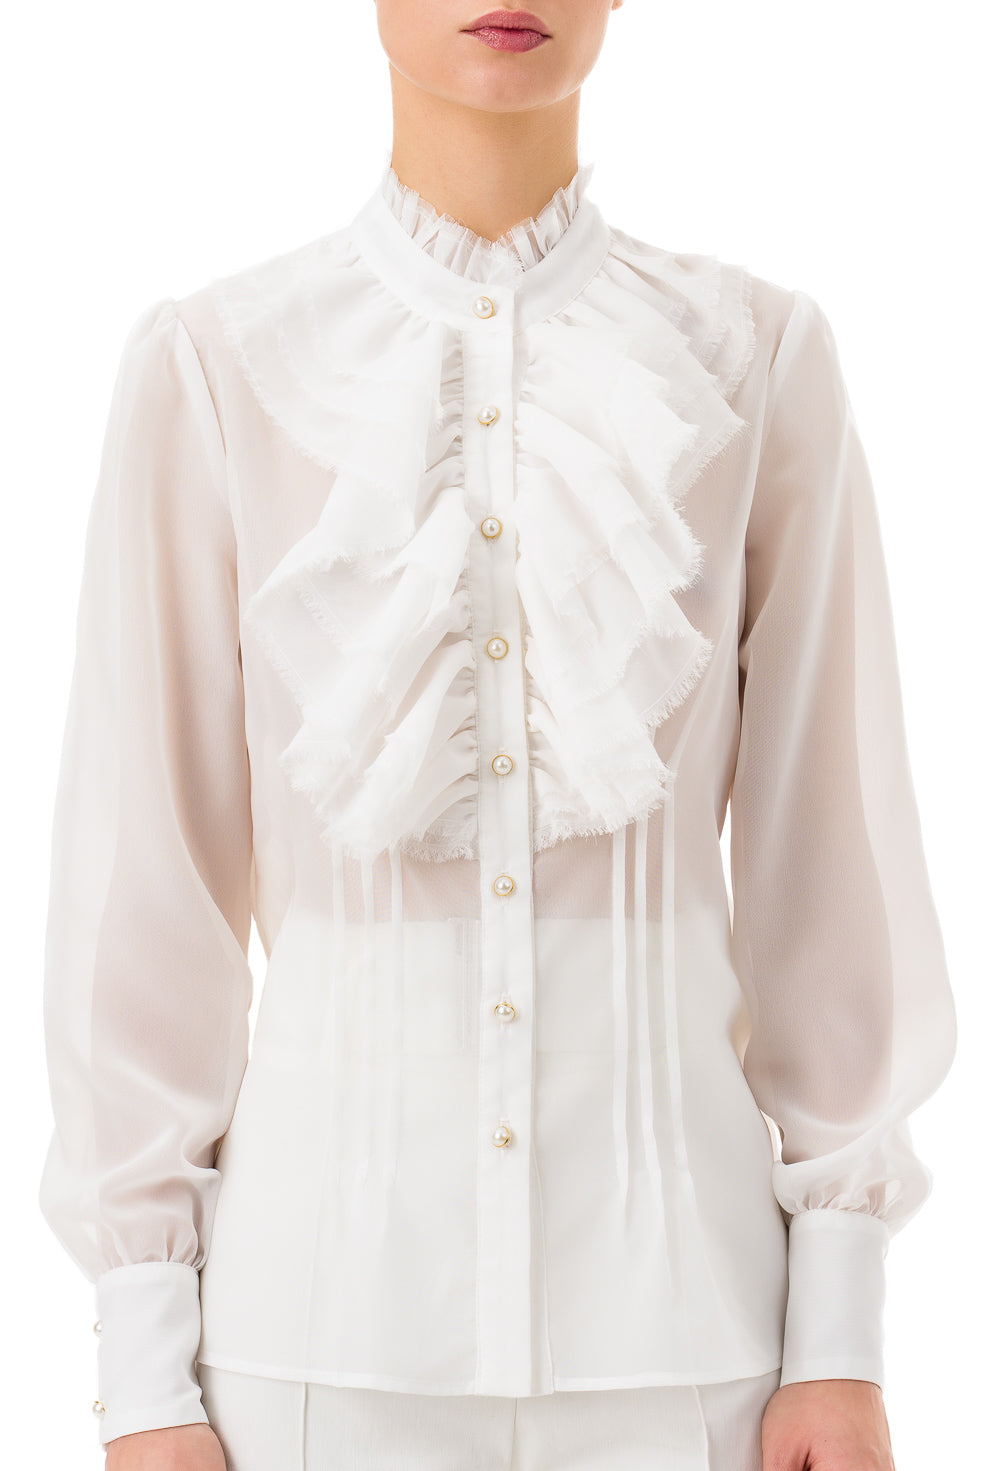 Meriah White Shirt